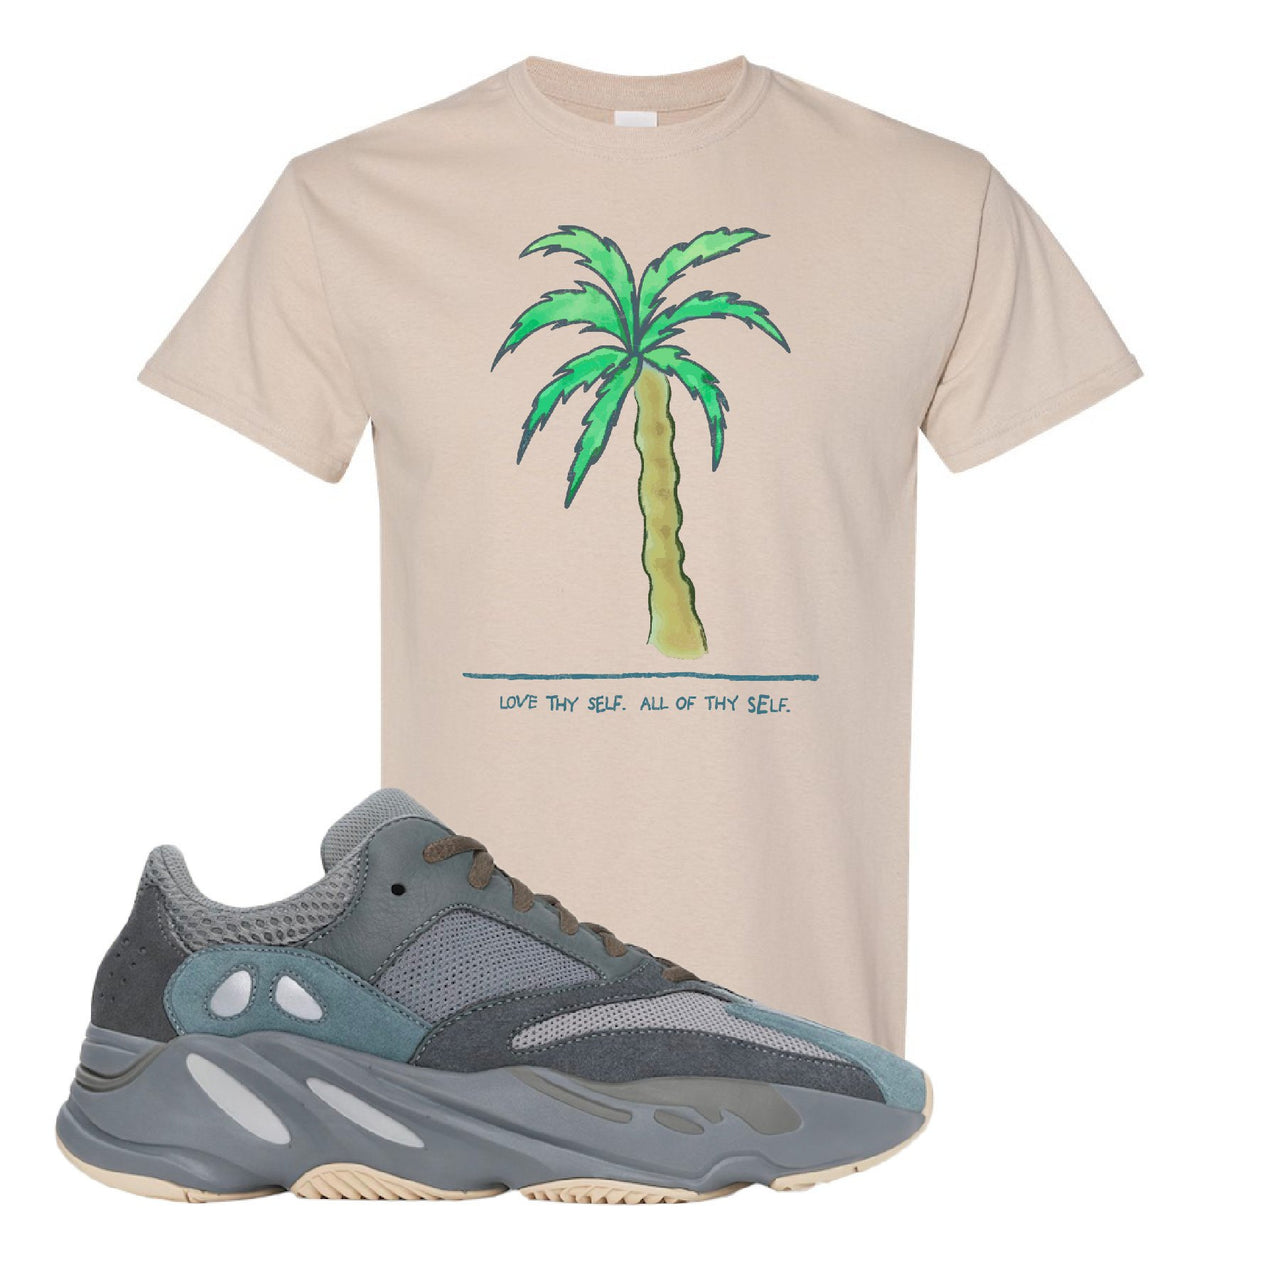 Yeezy Boost 700 Teal Blue Love Thyself Palm Sand Sneaker Hook Up T-Shirt